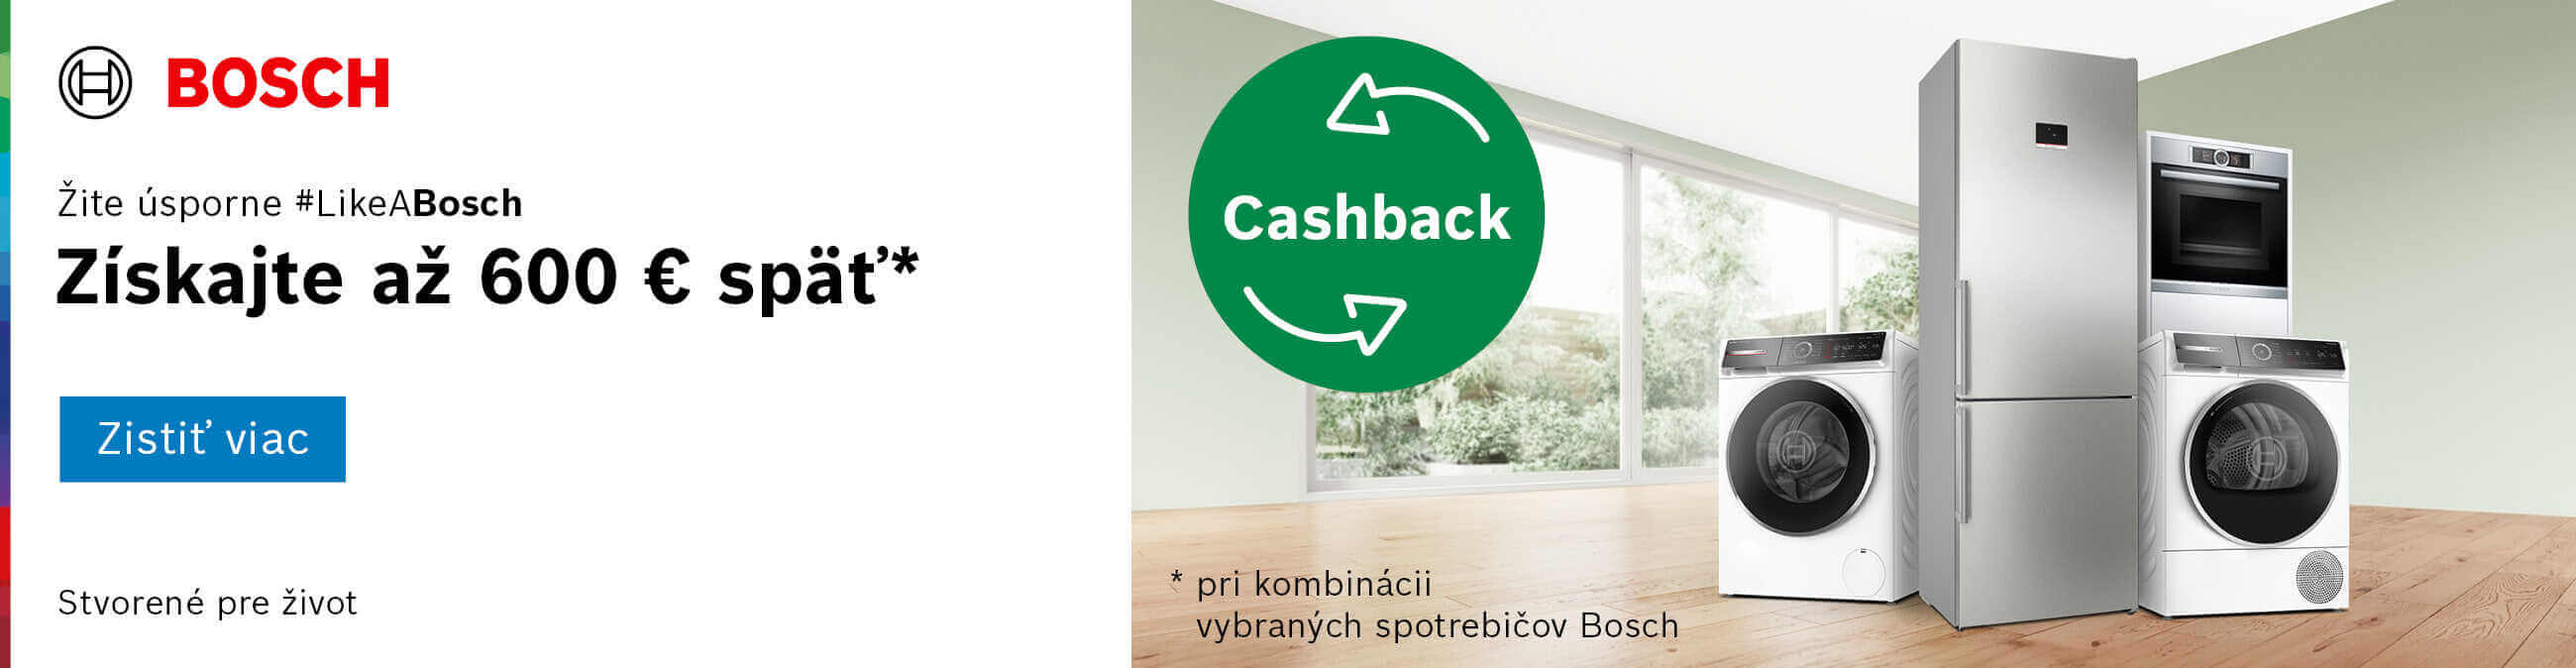 Bosch - Cashback získajte až 600 € späť